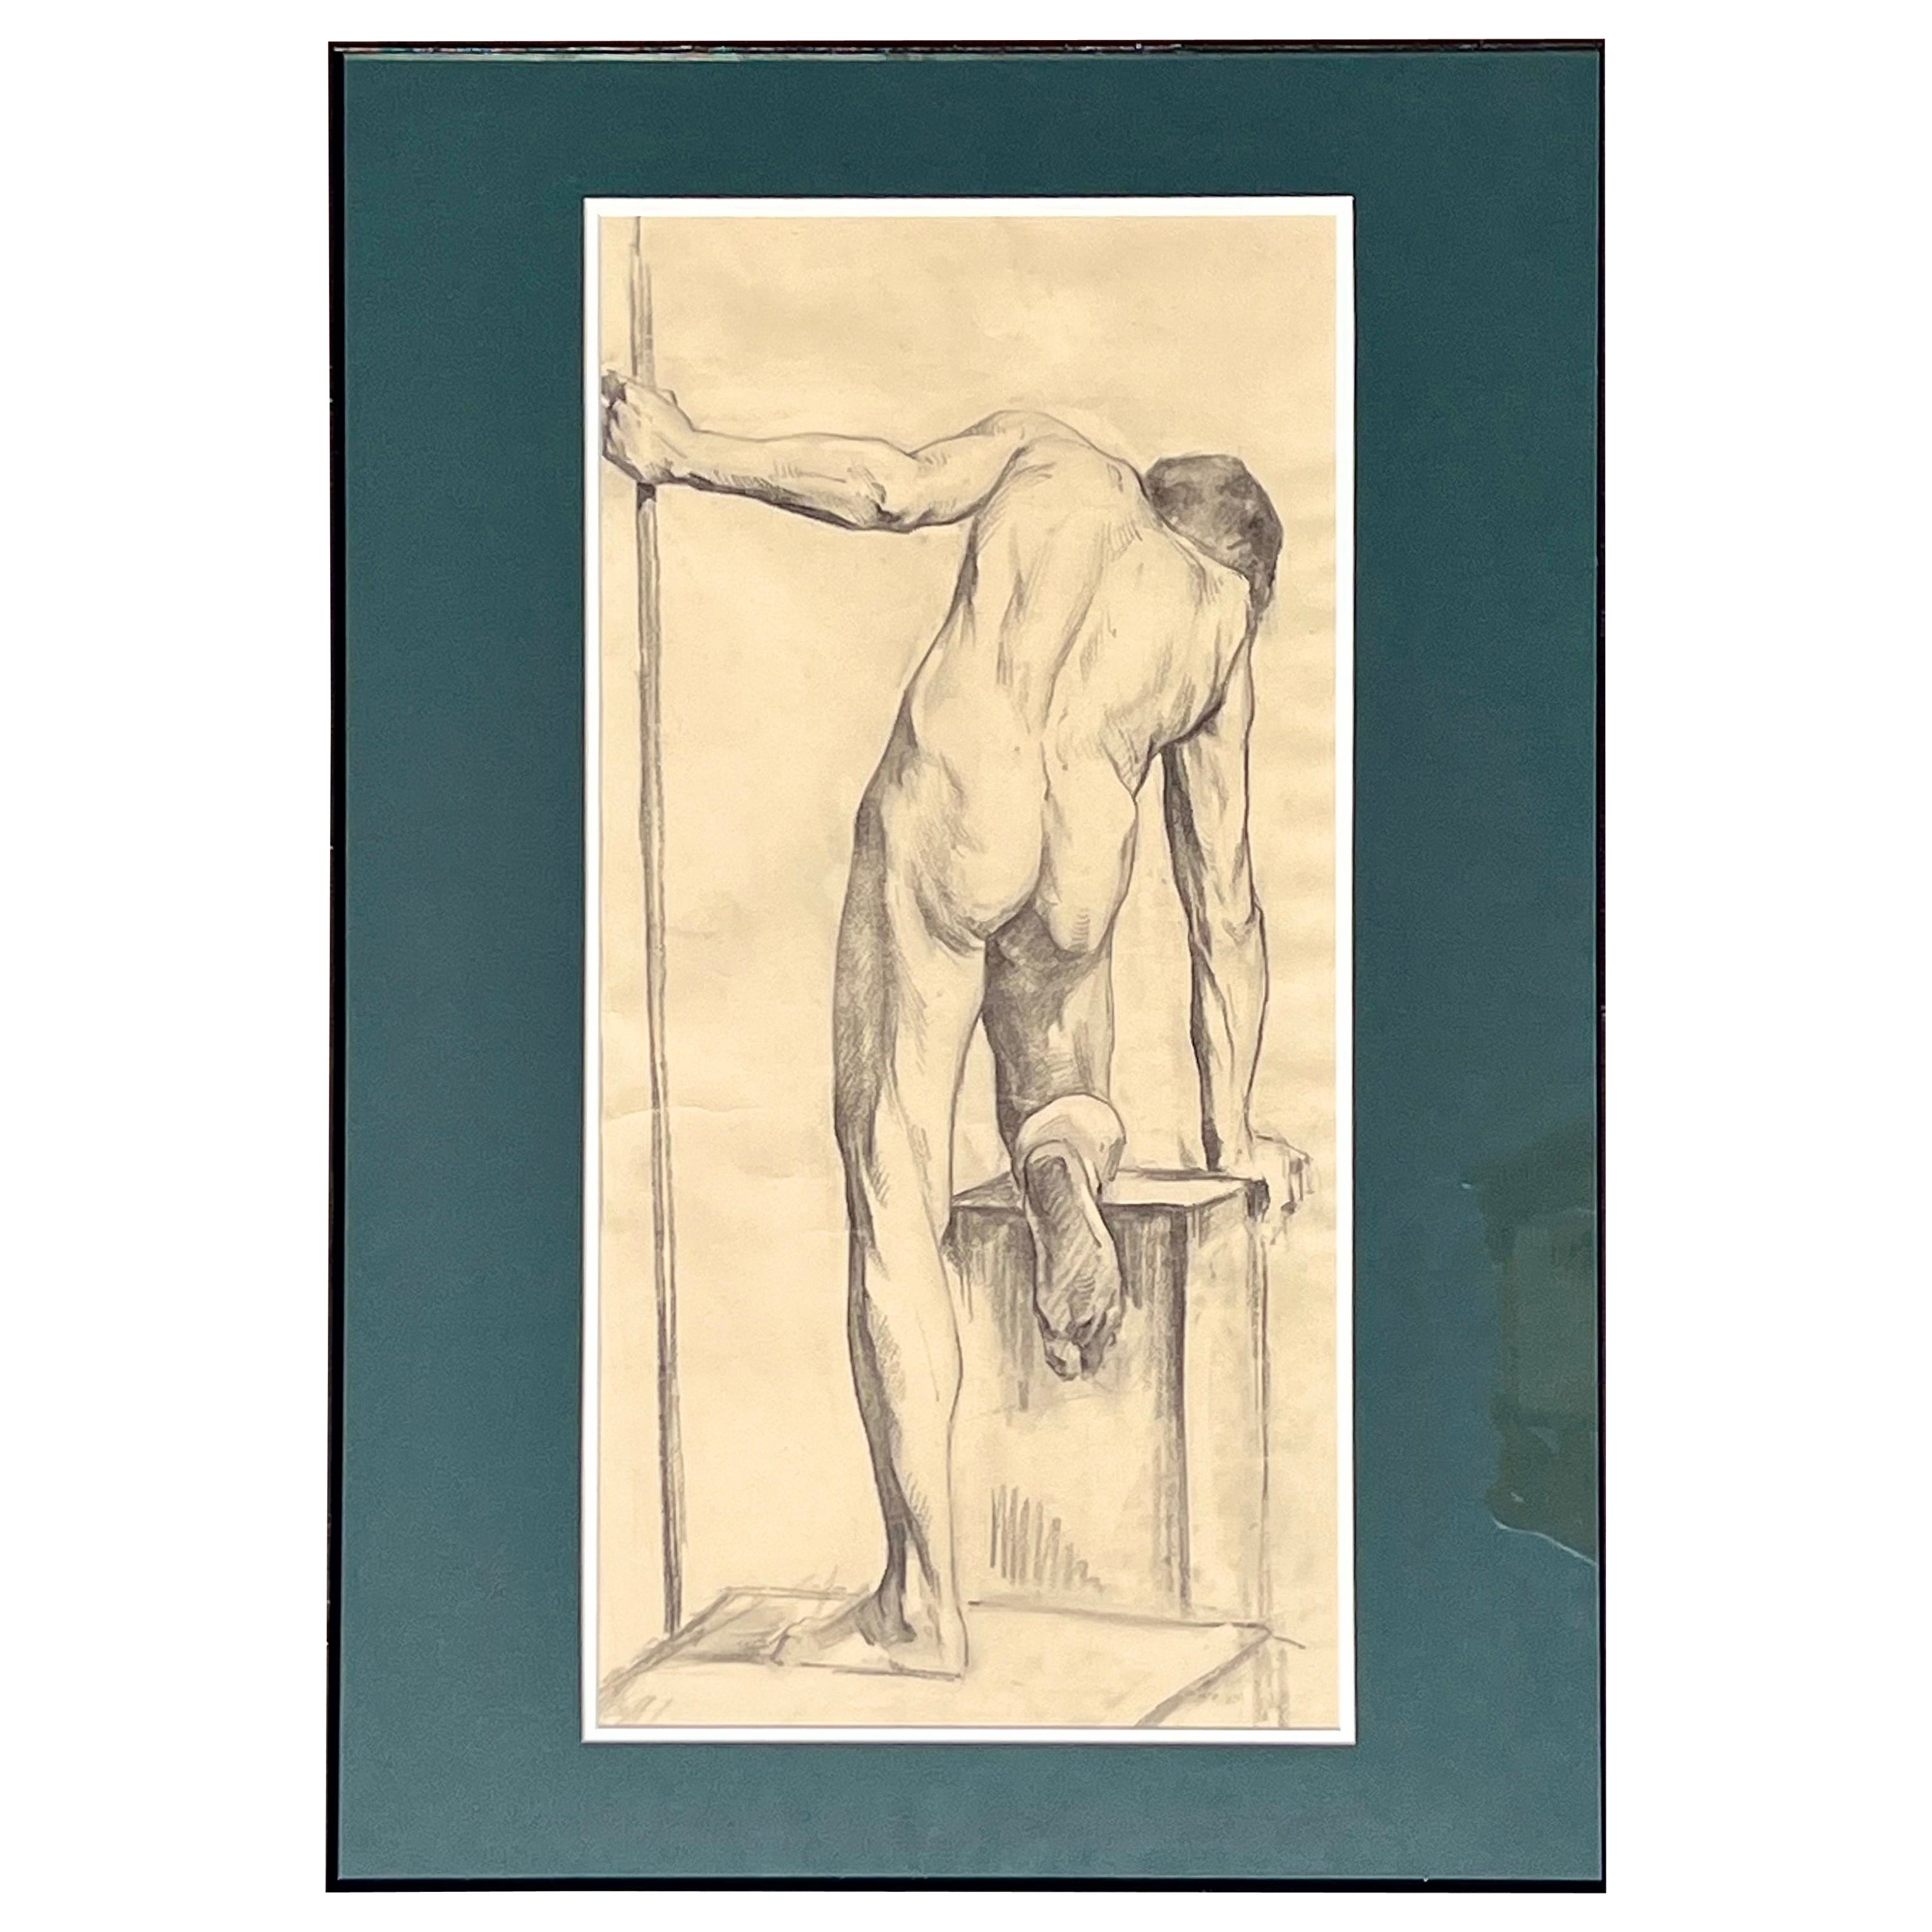 Dessin d'étude ancien de Paris sur le nu masculin, encadré en Italie

Nous proposons à la vente un dessin d'étude de nu masculin de la fin du 19e siècle, réalisé à la mine de plomb sur papier, avec de nombreux détails. Il y a 4 dessins au total, qui